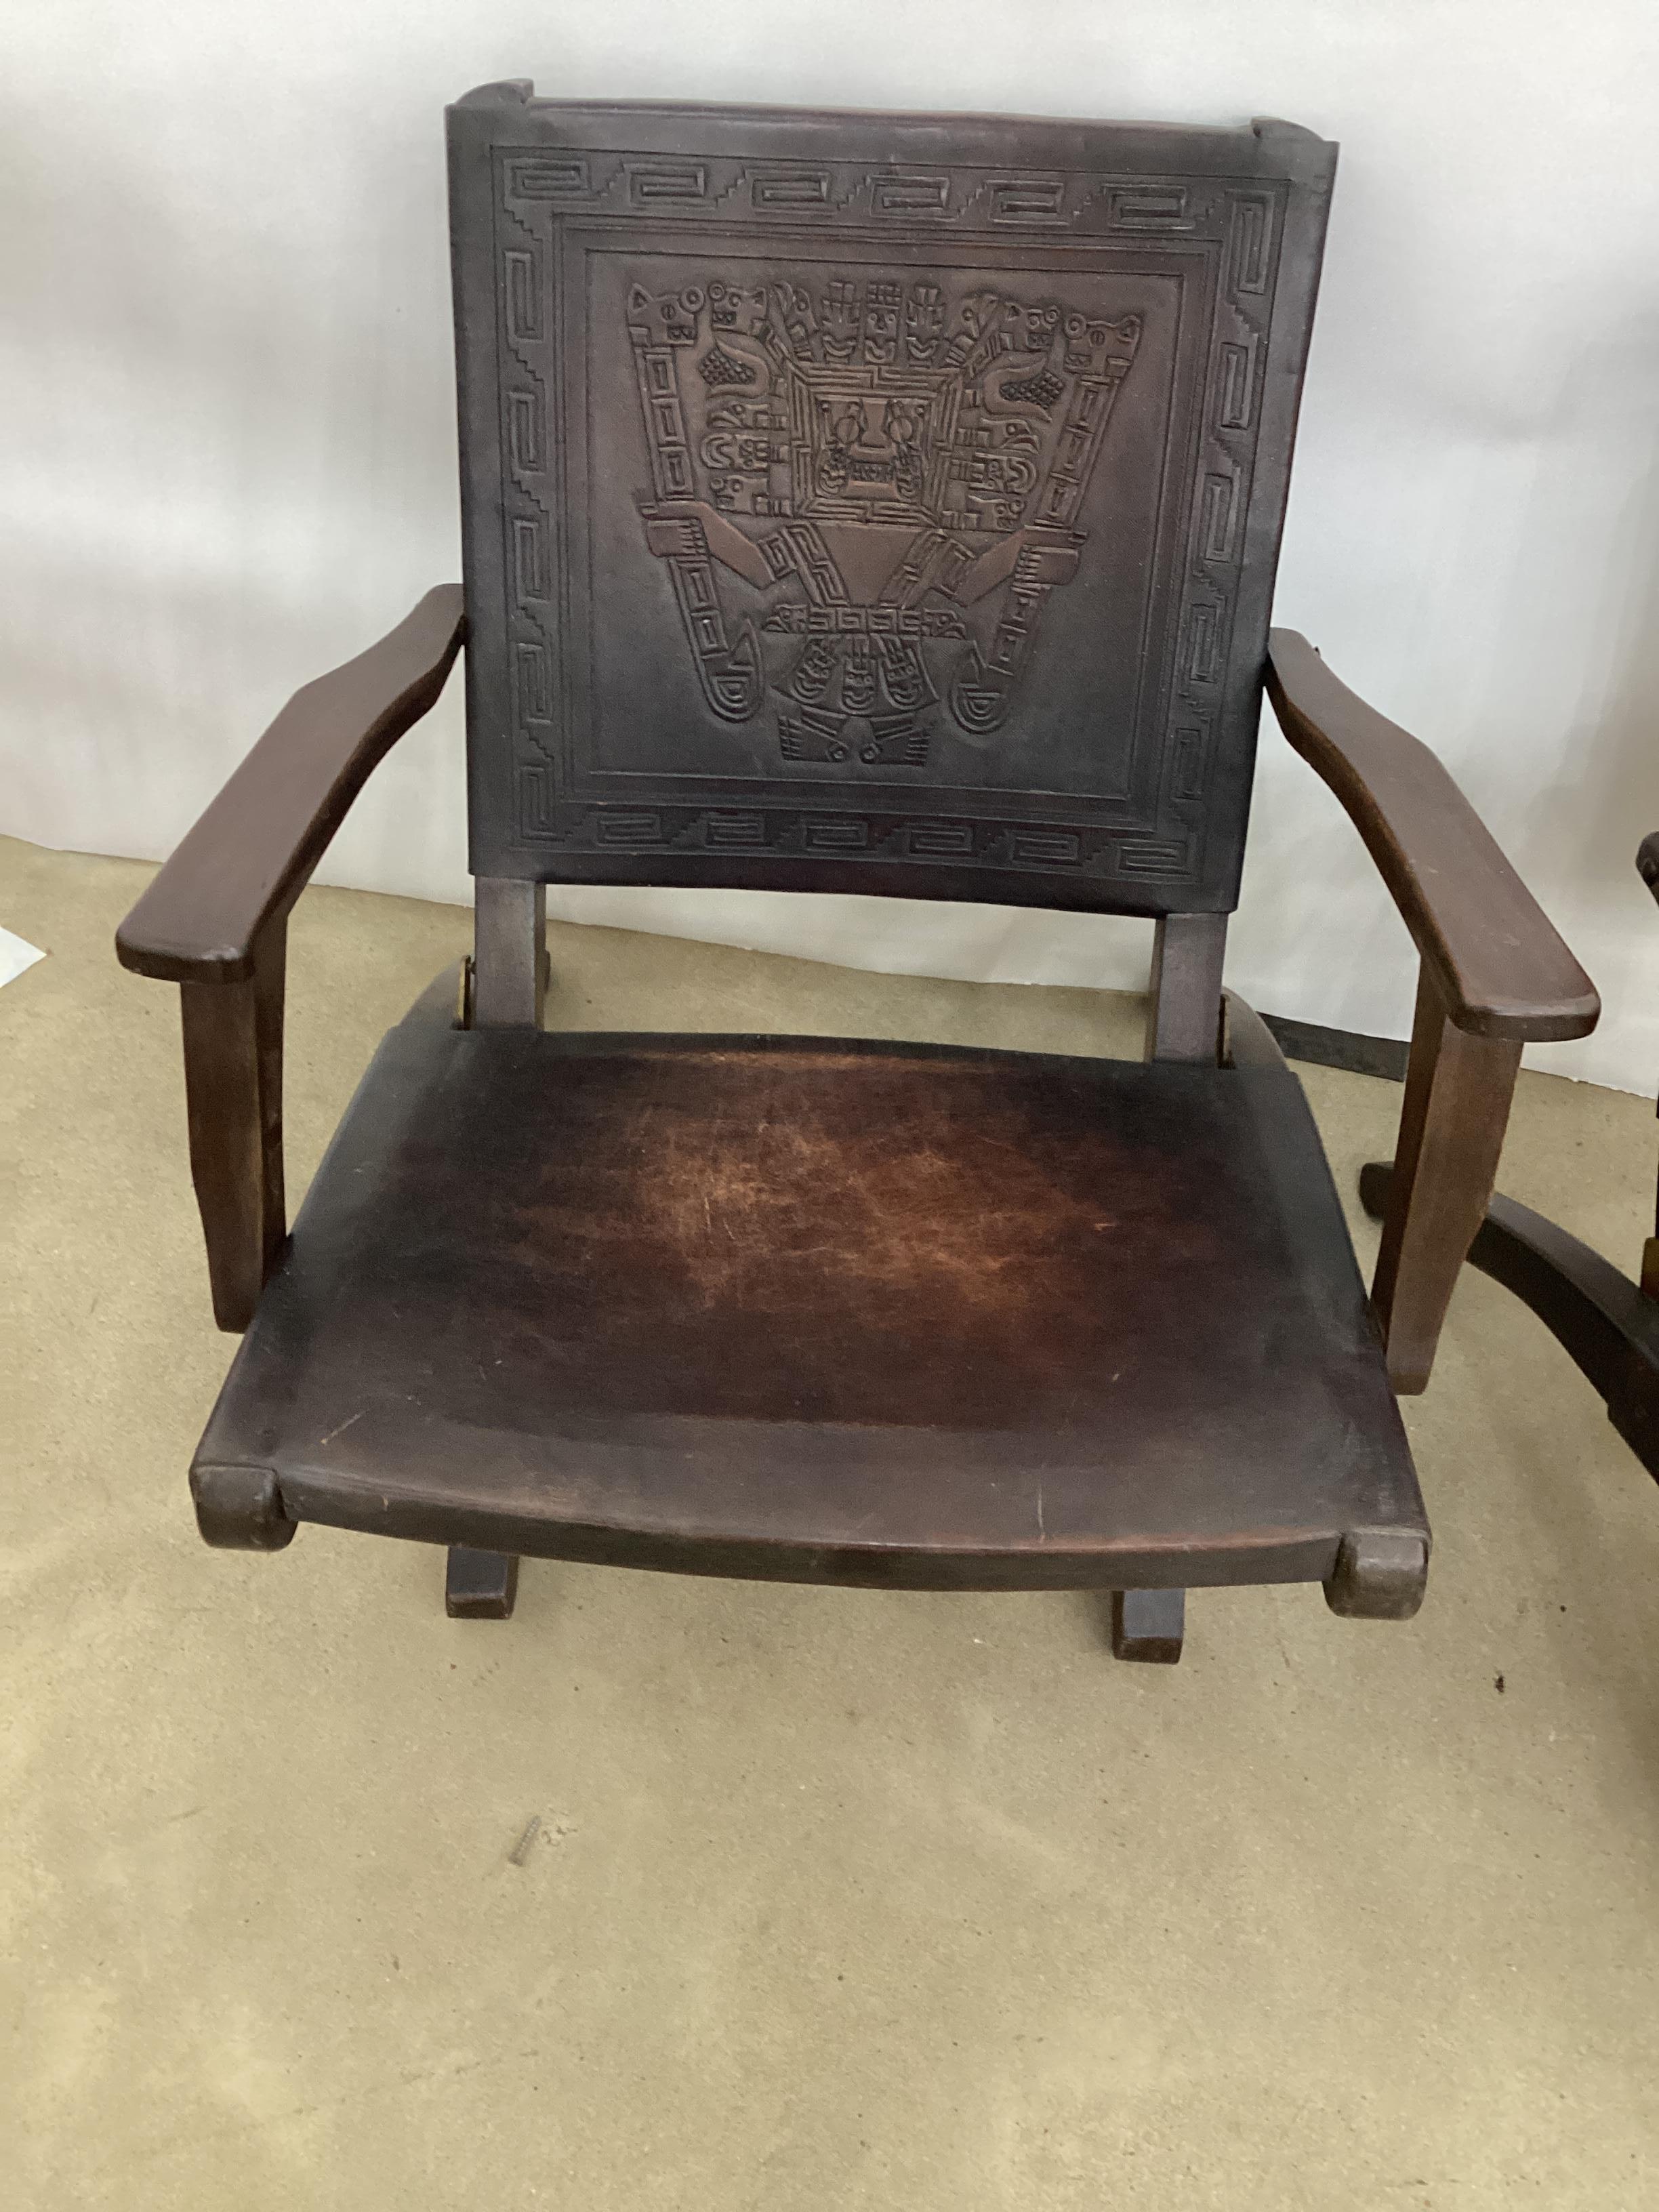 Belle paire de chaises pliantes en meranti massif, dossier et assise en cuir de selle marron embossé de motifs incas. Cette chaise moderniste a été conçue par Angel Pazmino pour Meubles de Estilo à la fin des années 1960. À cette époque, l'Équateur